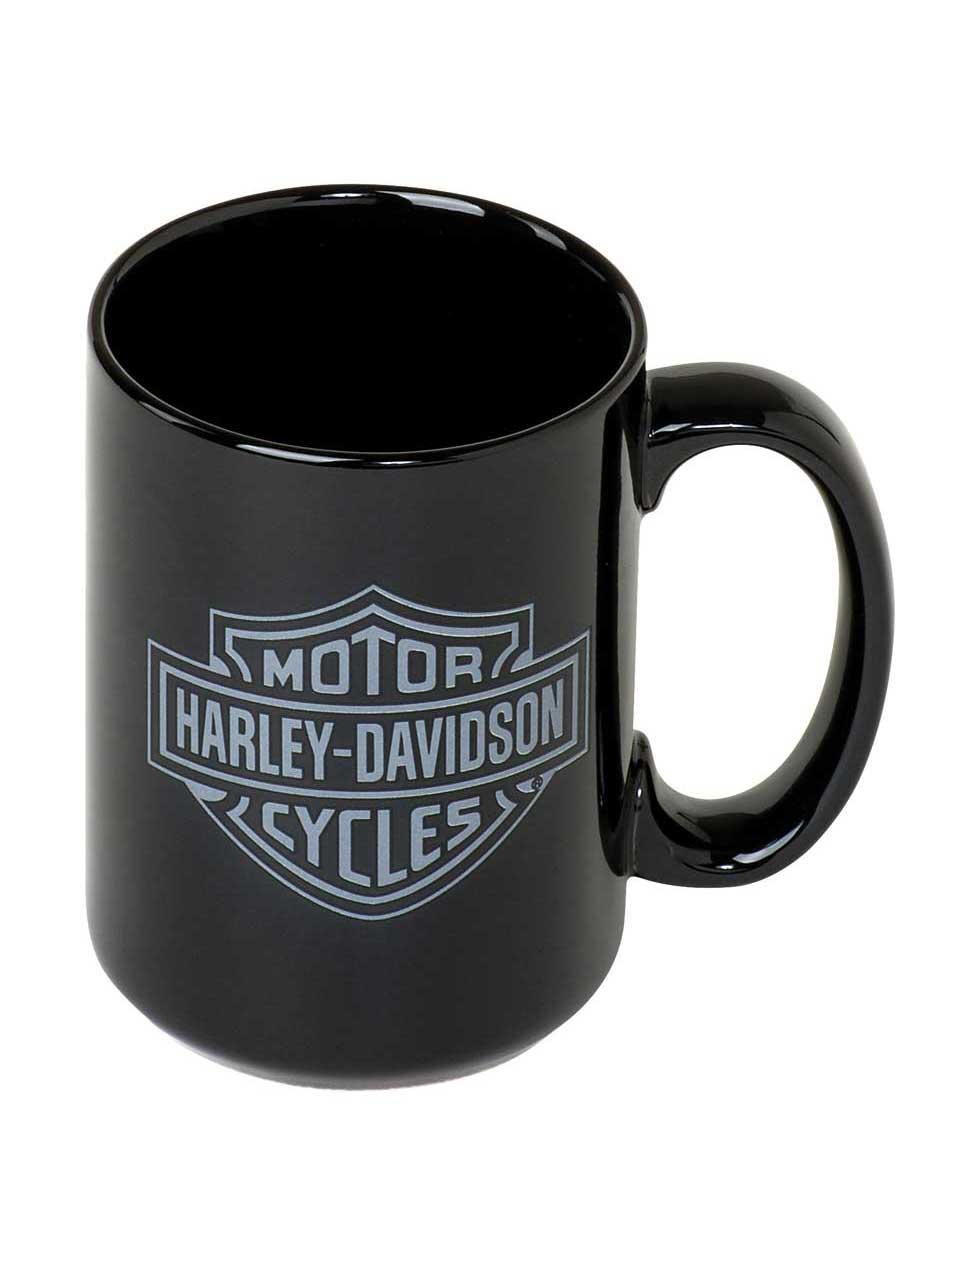 Harley-Davidson Bar & Shield Logo Juego de cestas de regalo, negro y gris HDL-19905, Harley Davidson